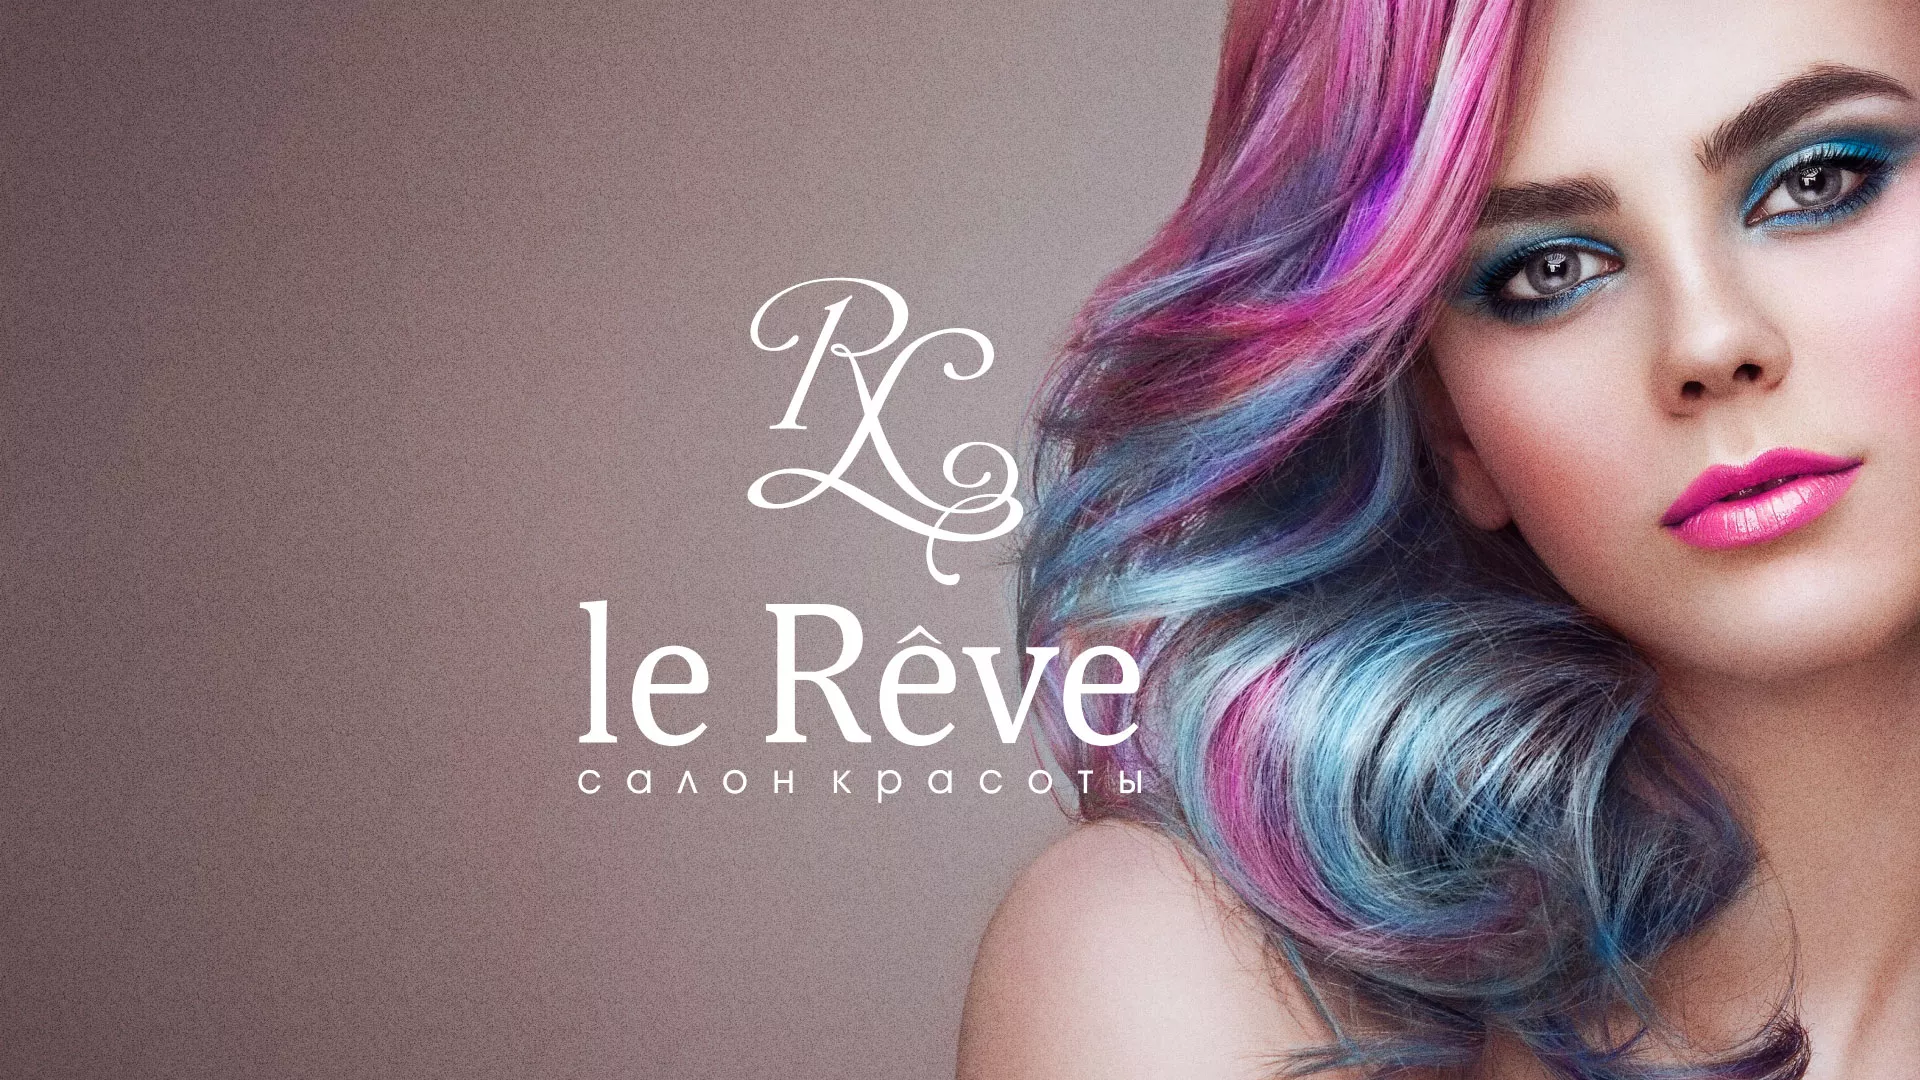 Создание сайта для салона красоты «Le Reve» в Пушкине